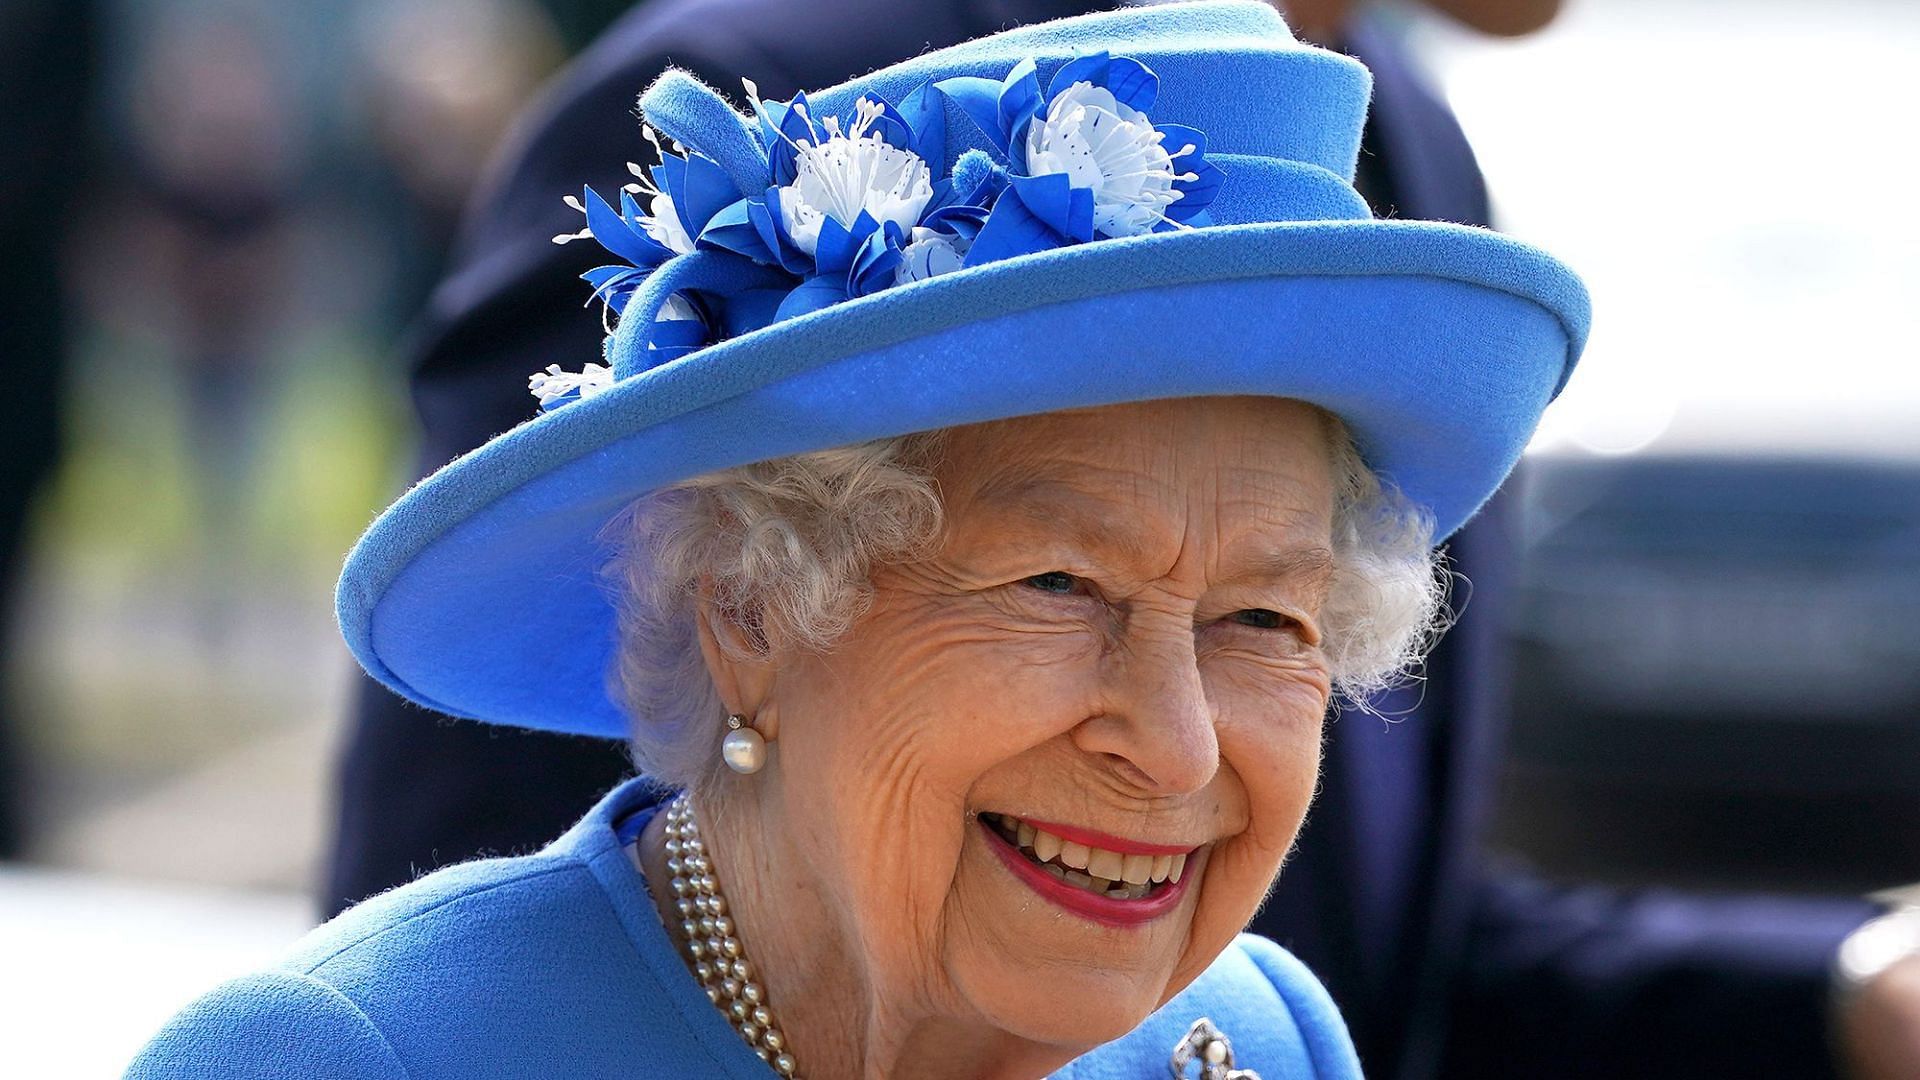 Queen Elizabeth II (Image via People)